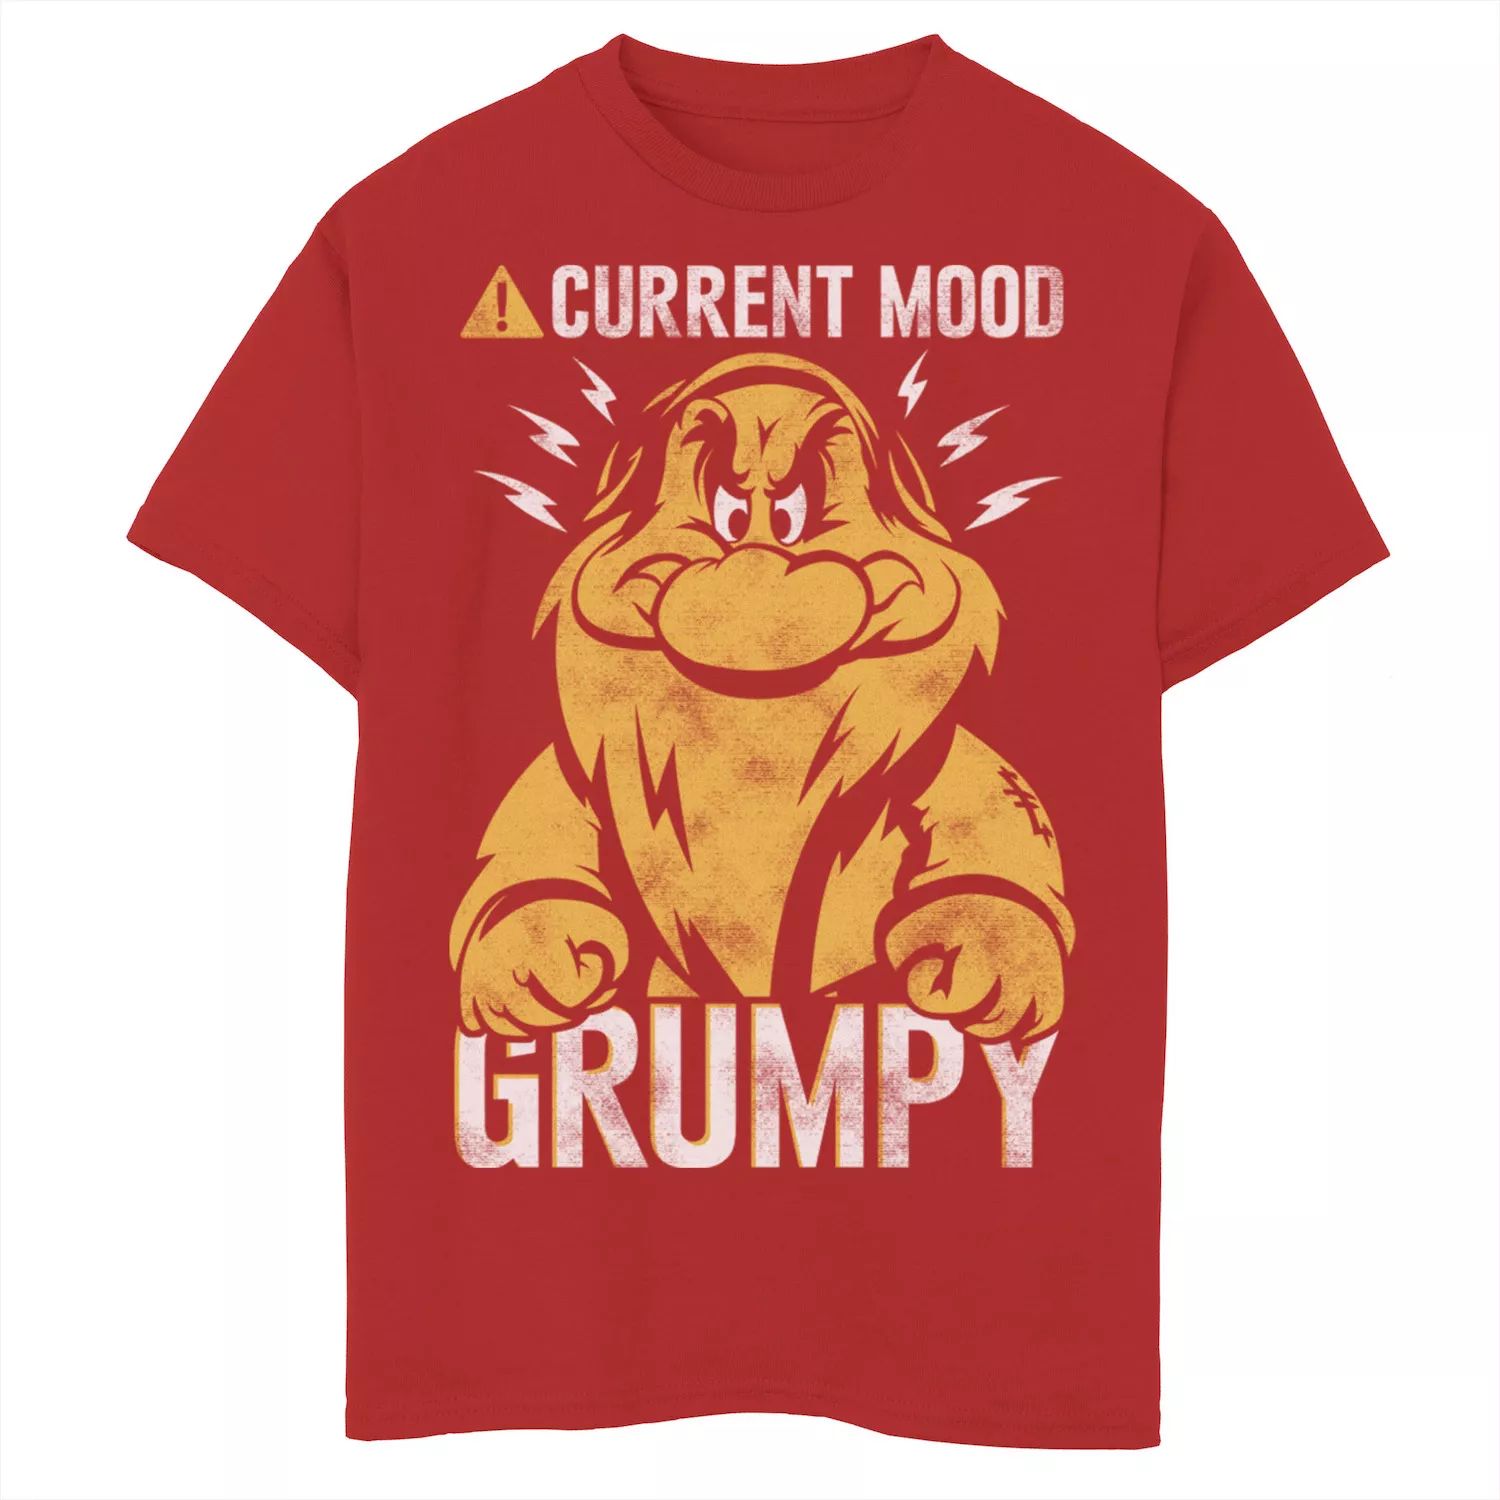 Футболка Grumpy Current Mood для мальчиков 8–20 лет Disney с изображением Белоснежного гнома Grumpy Current Mood Licensed Character